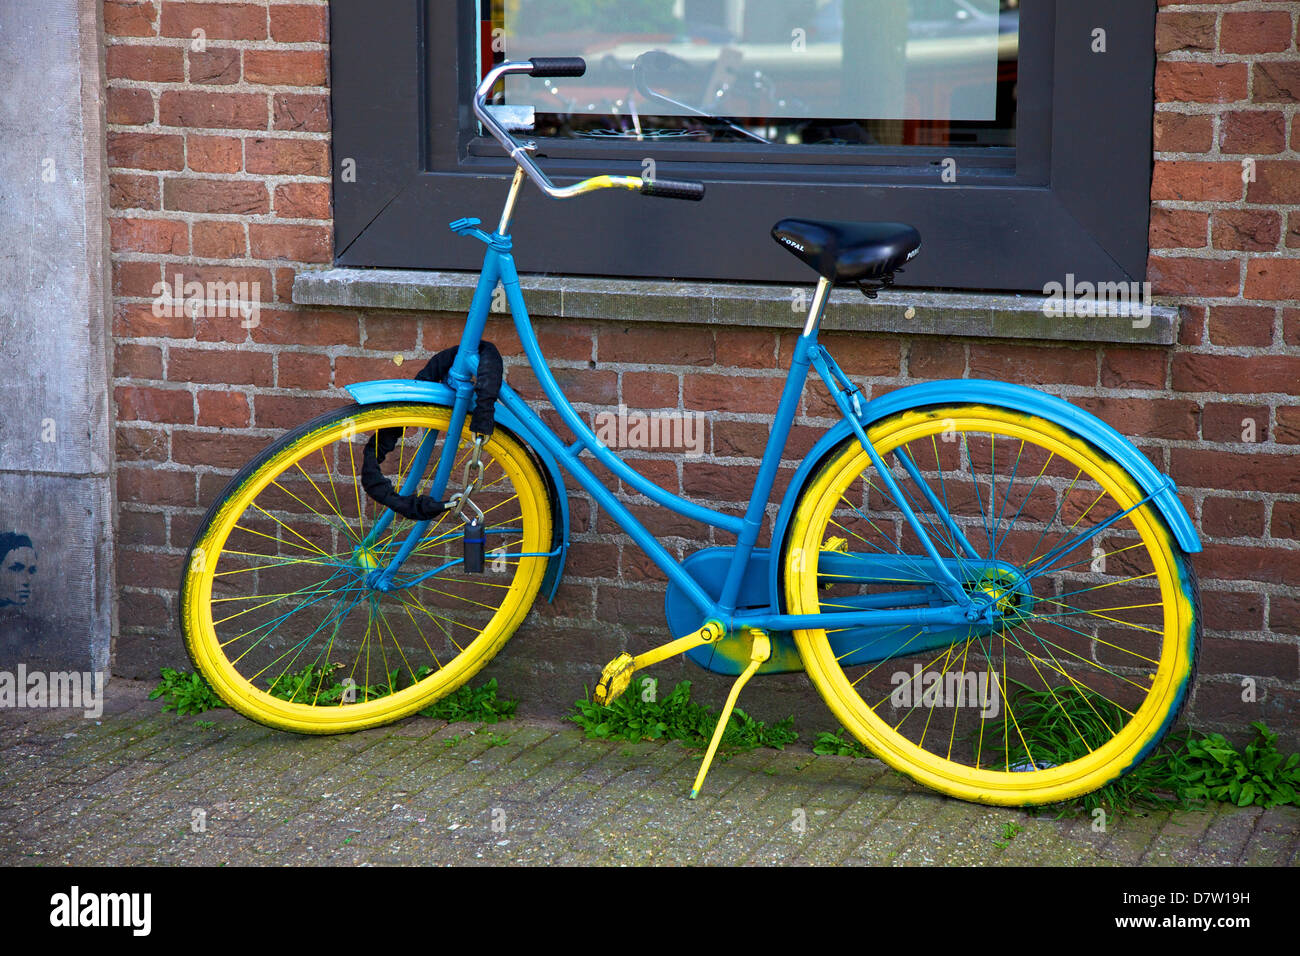 Vélo bleu et jaune, Amsterdam, Pays-Bas Banque D'Images